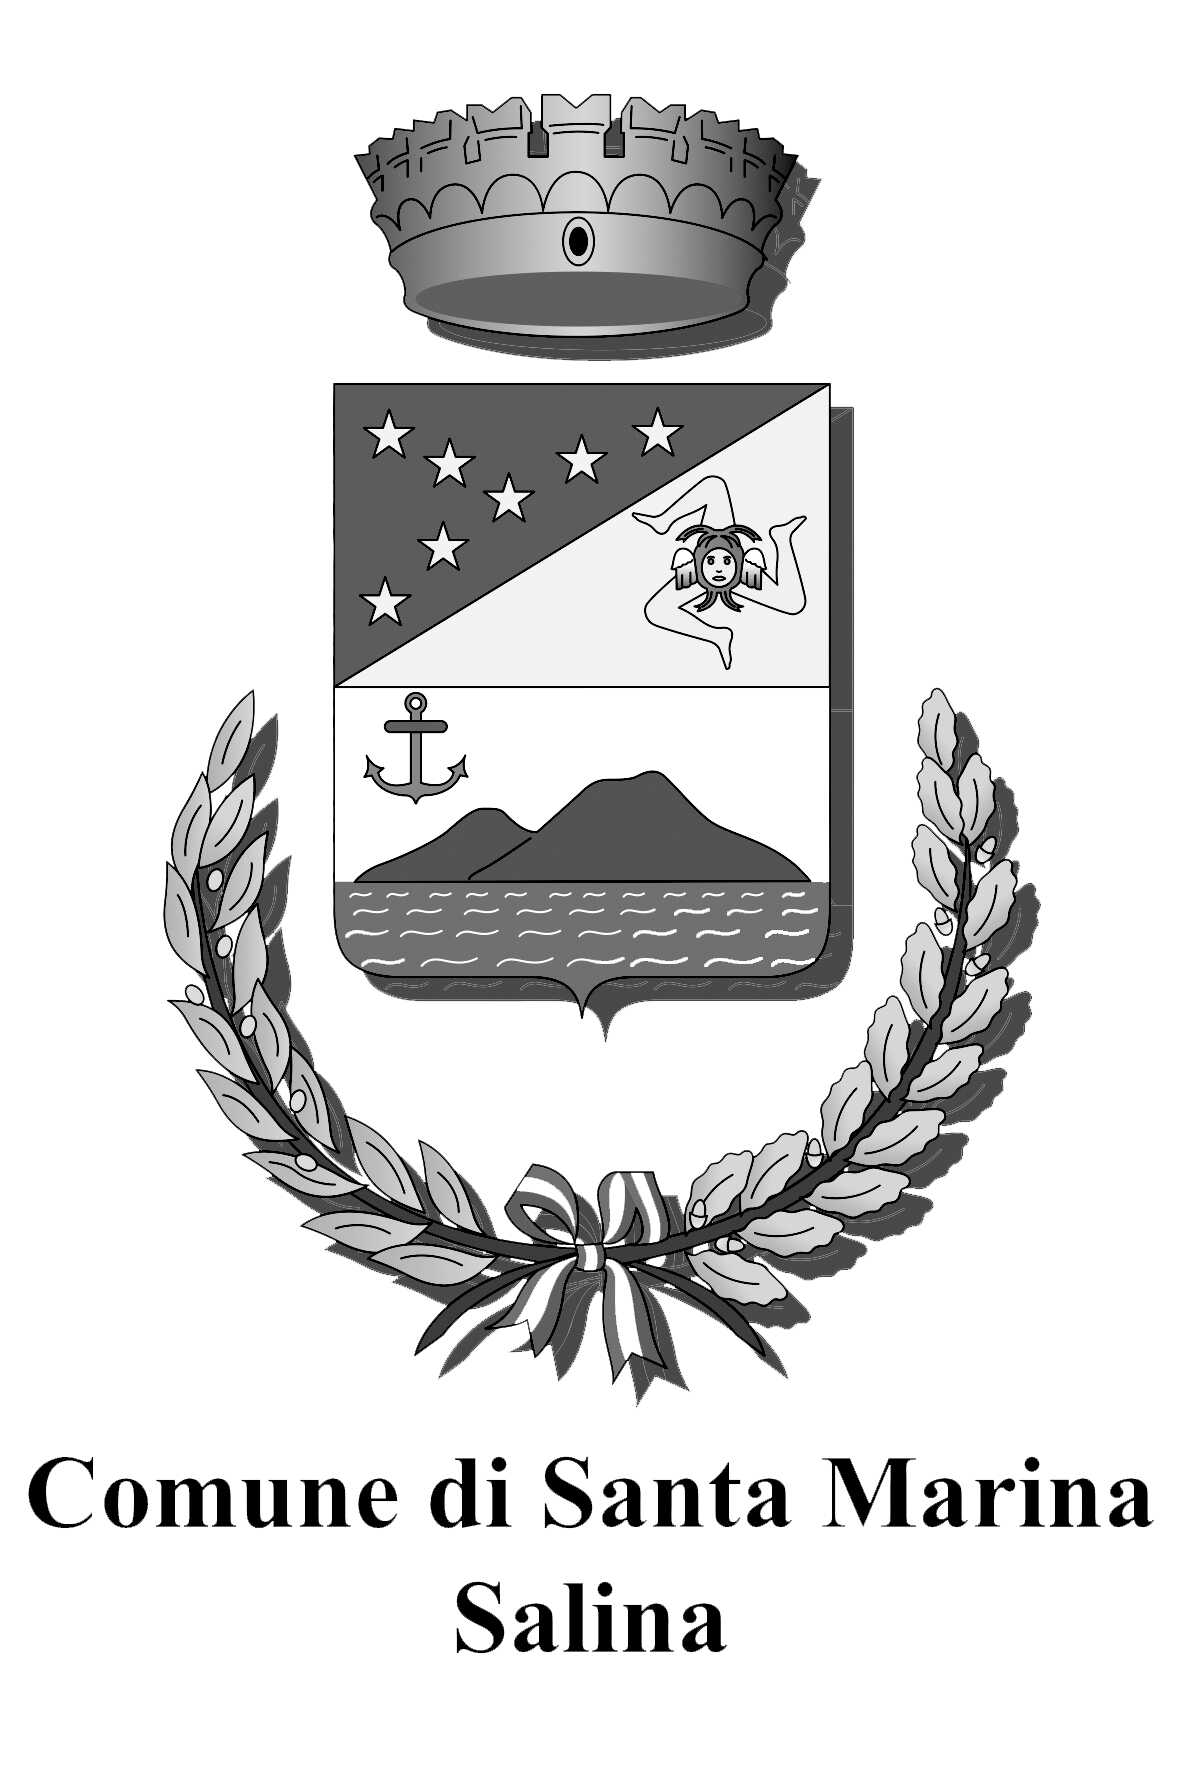 logo Commune di Santa Marina Salina